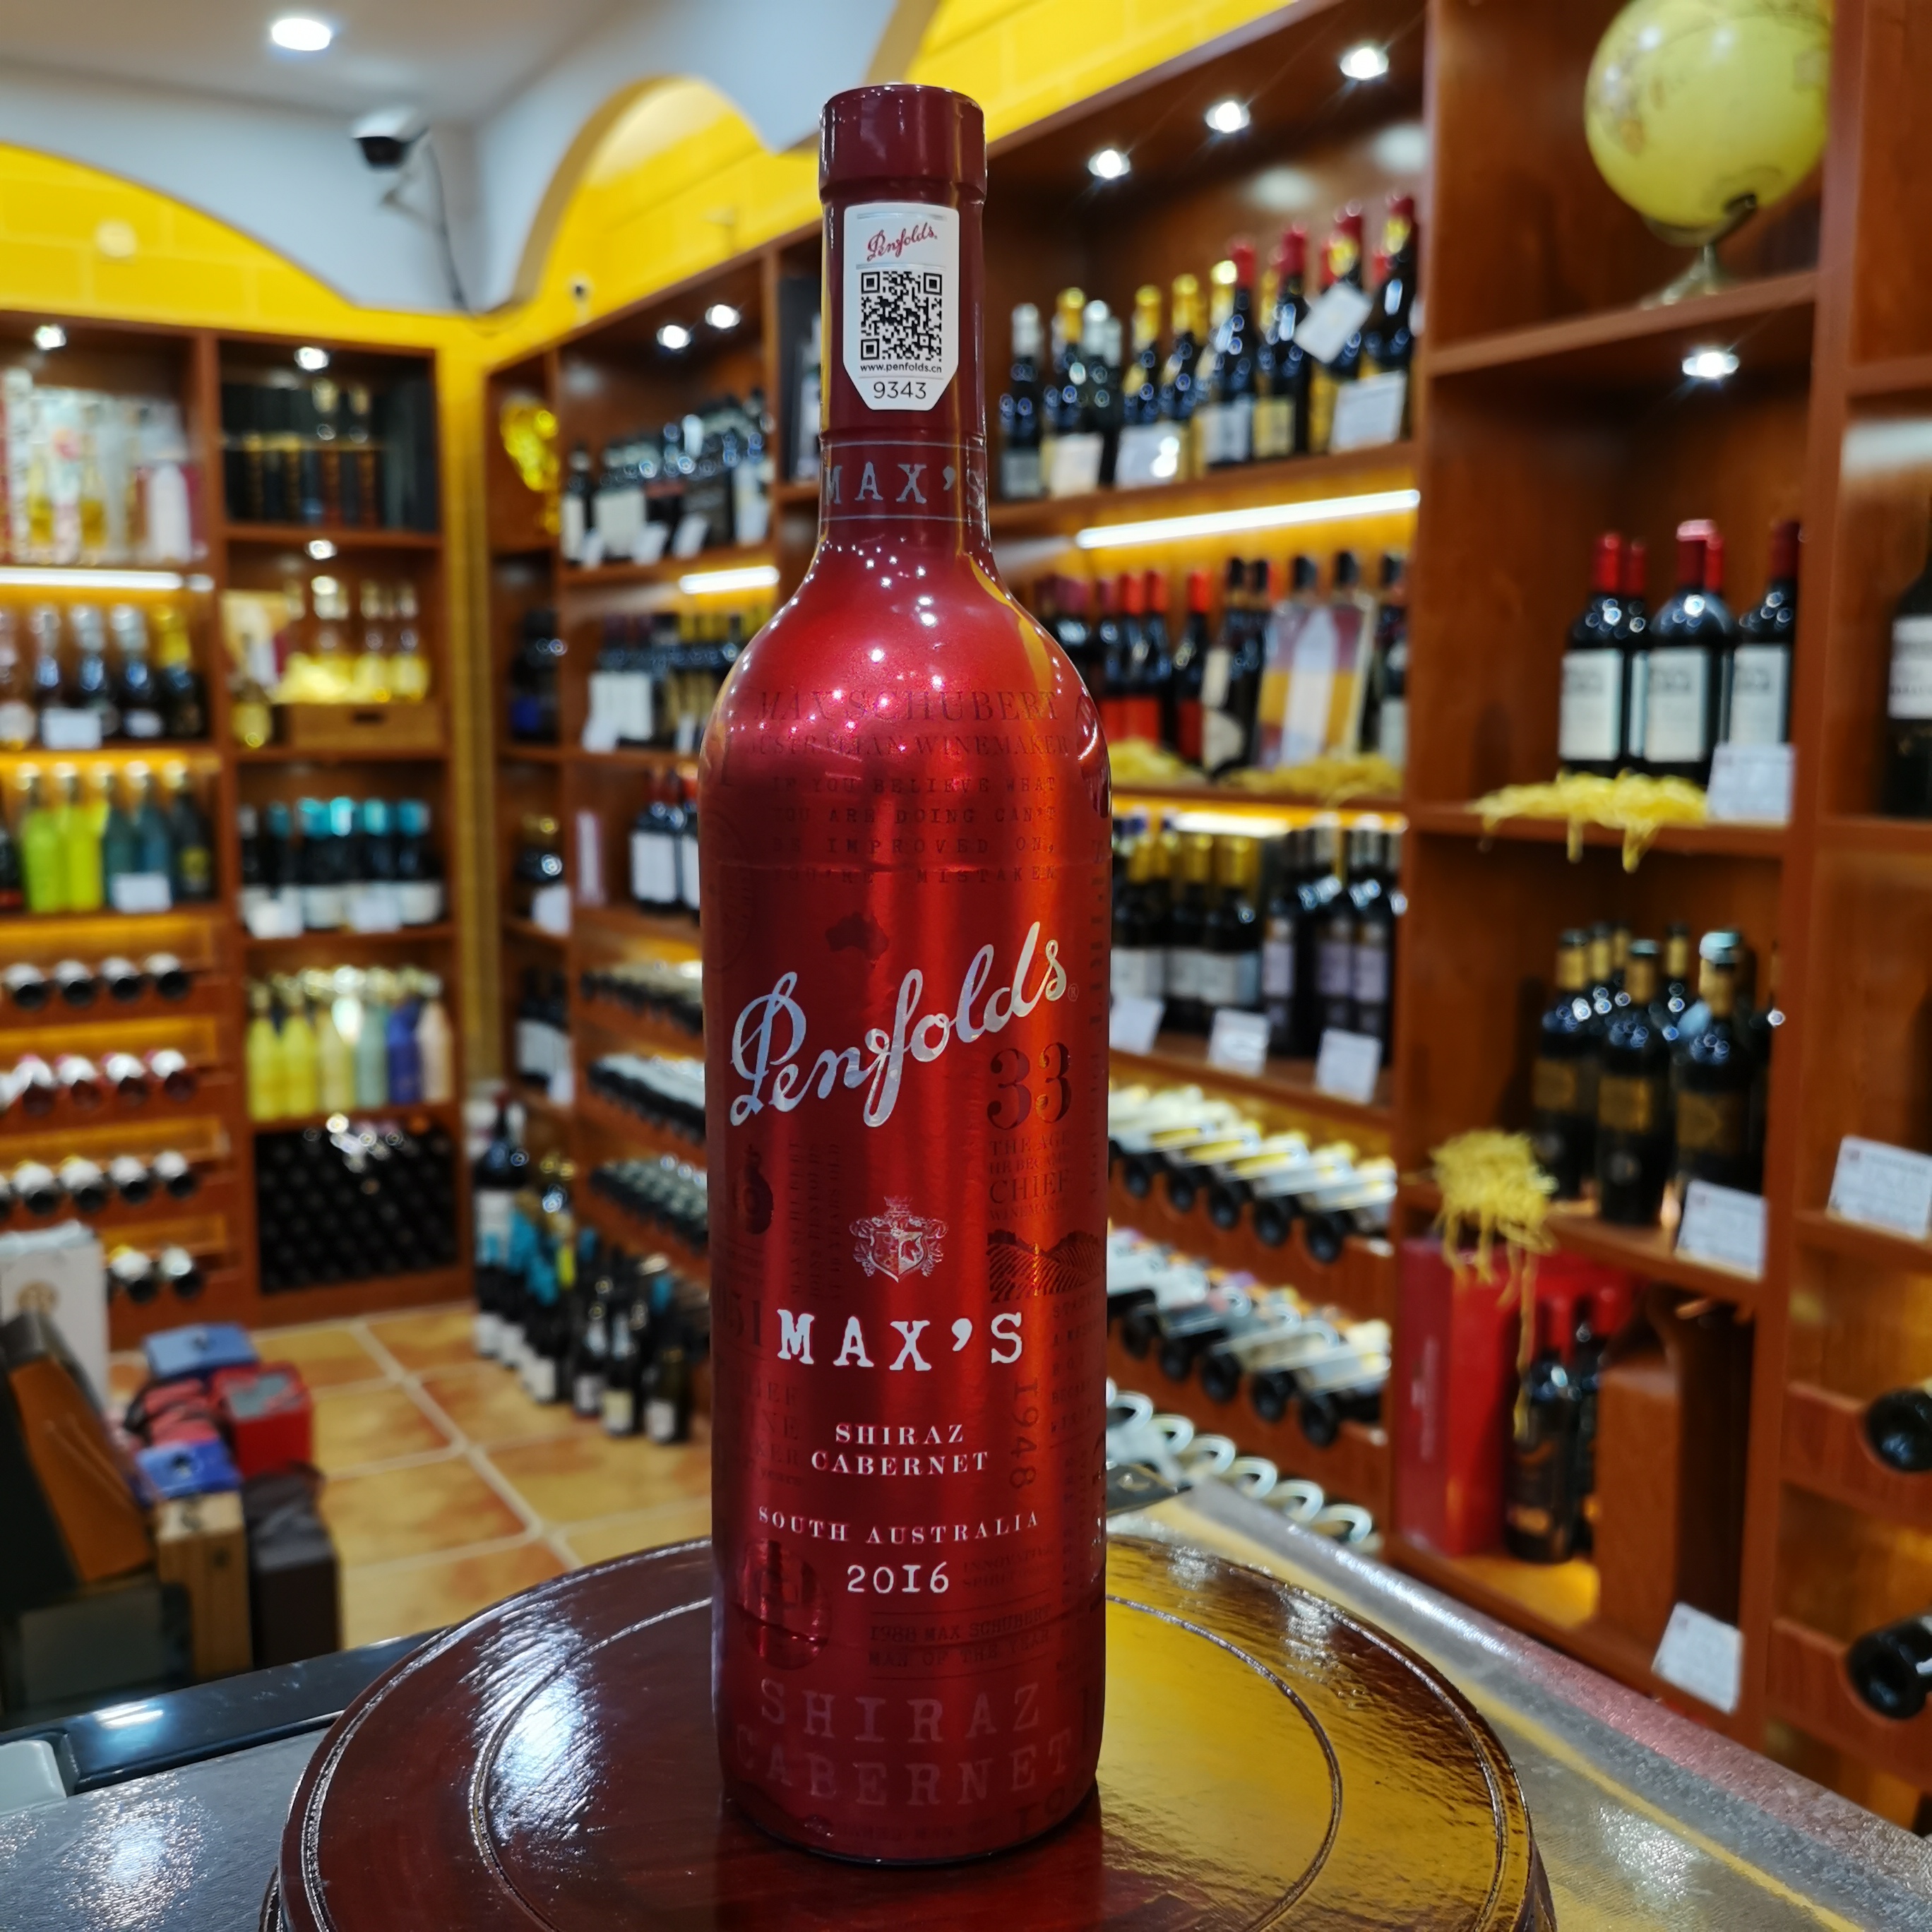 澳大利亚奔富麦克斯经典红葡萄酒原瓶进口赤霞珠西拉红酒